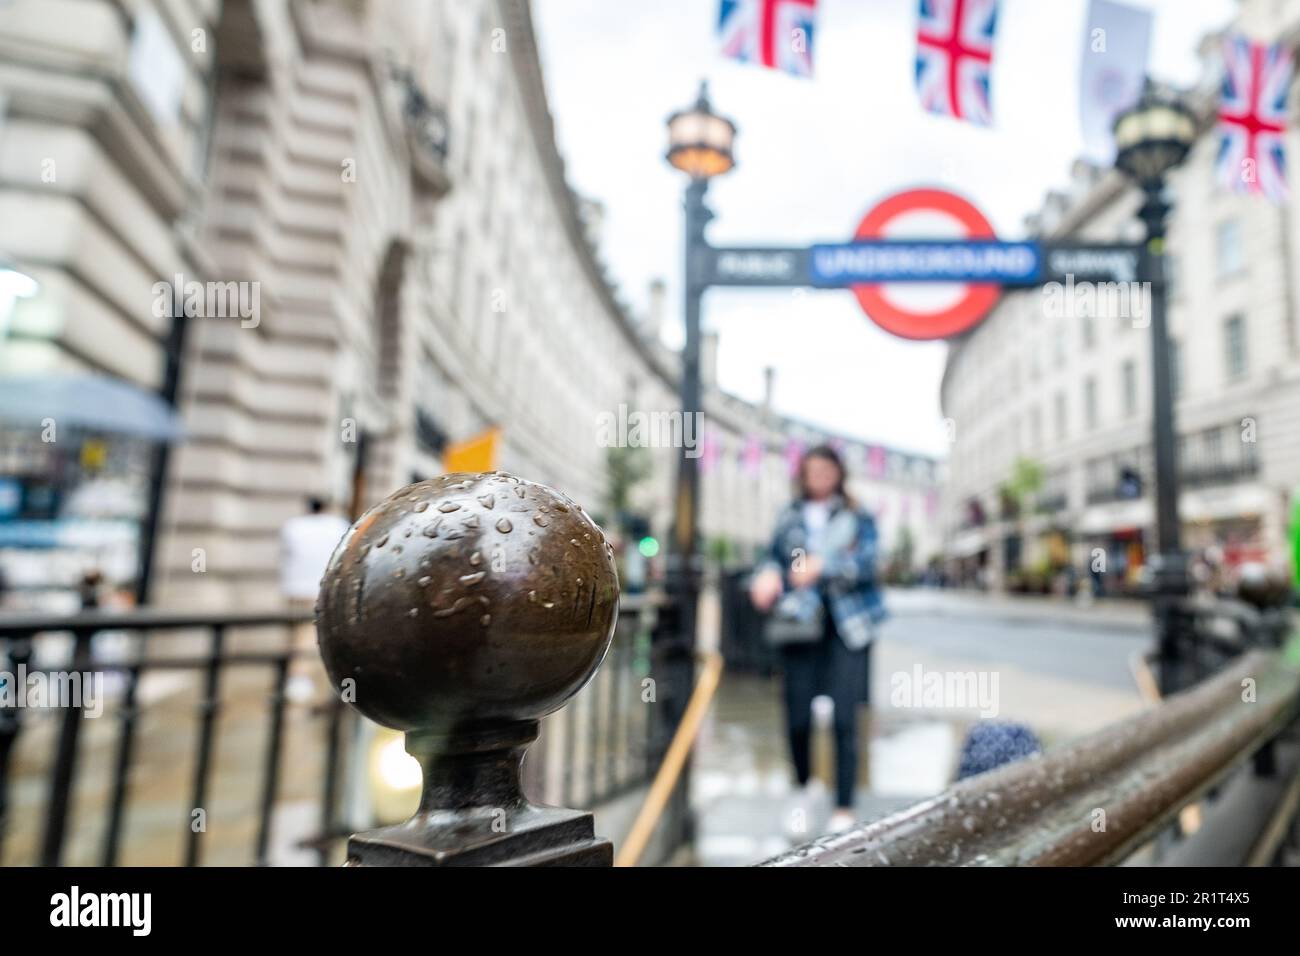 London - Mai 2023: Blick auf die Regent Street in London mit der U-Bahn-Station Piccadilly Circus im Vordergrund. Stockfoto